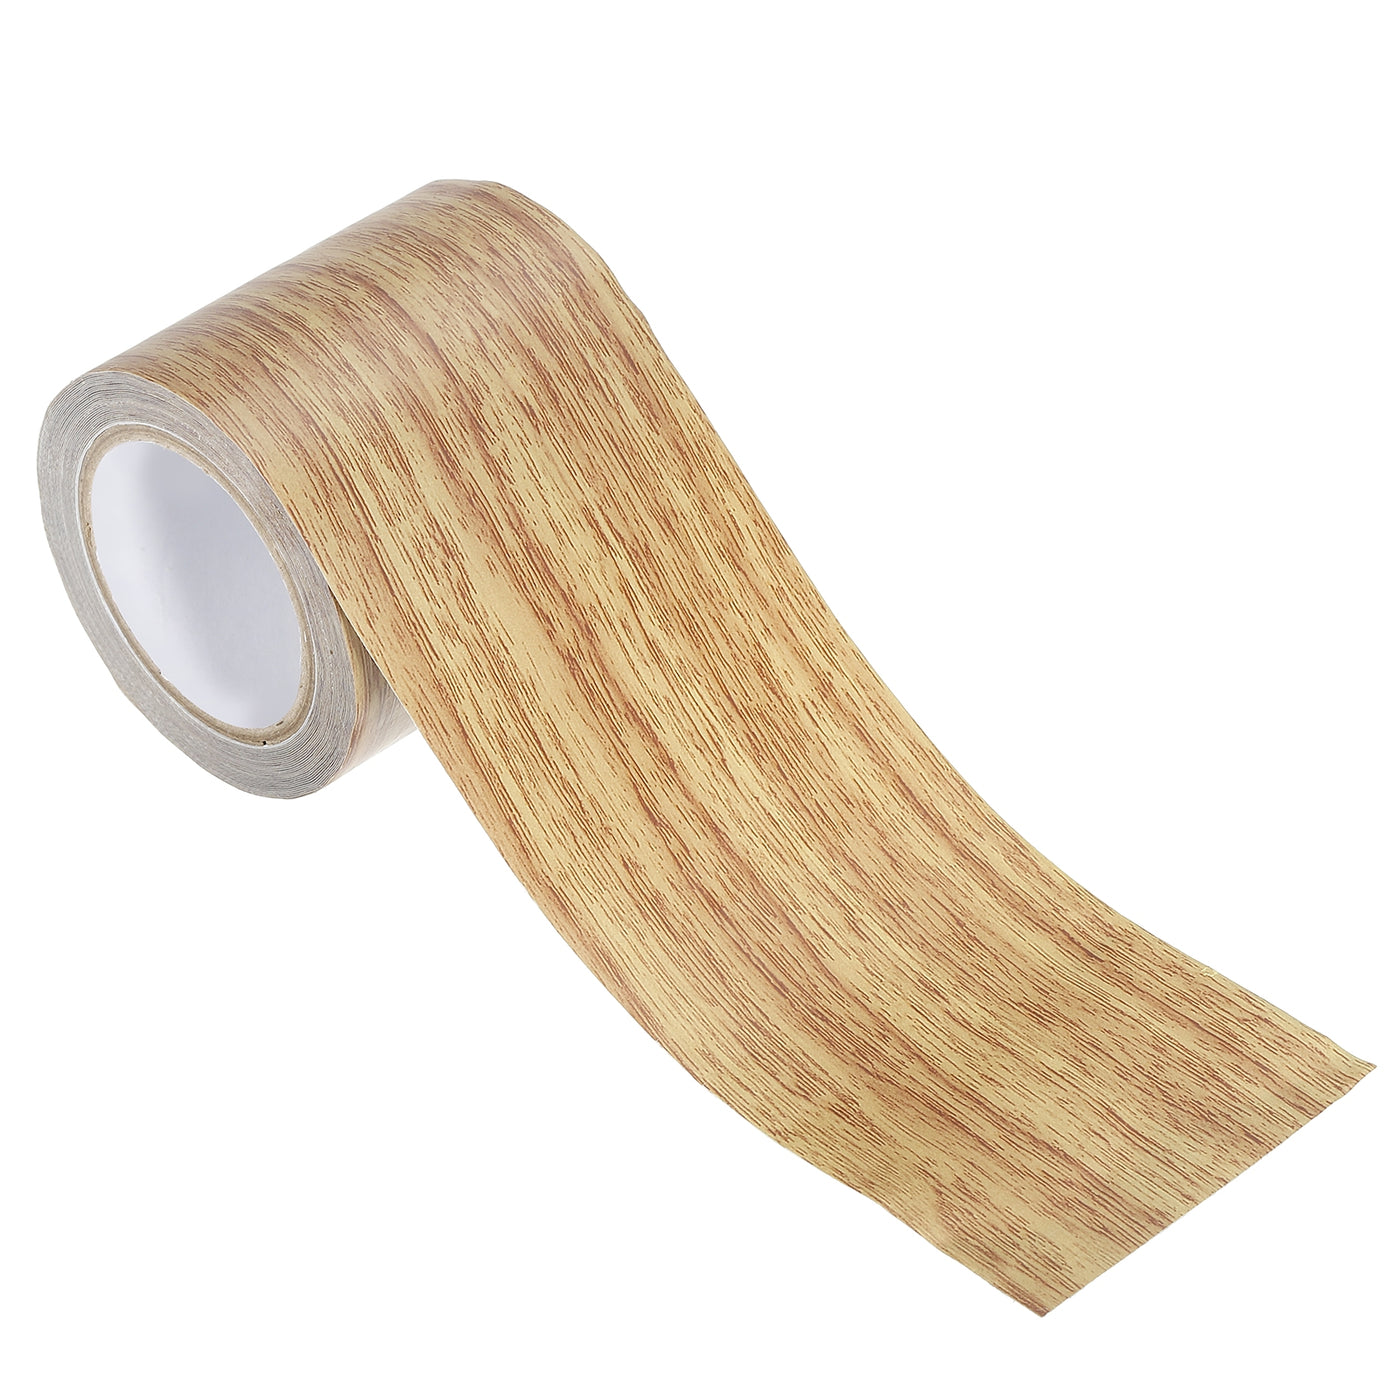 Harfington Wood Grain Repair Tape 2.2"X15', Self Adhesive Realistic Patch, Brown Oak